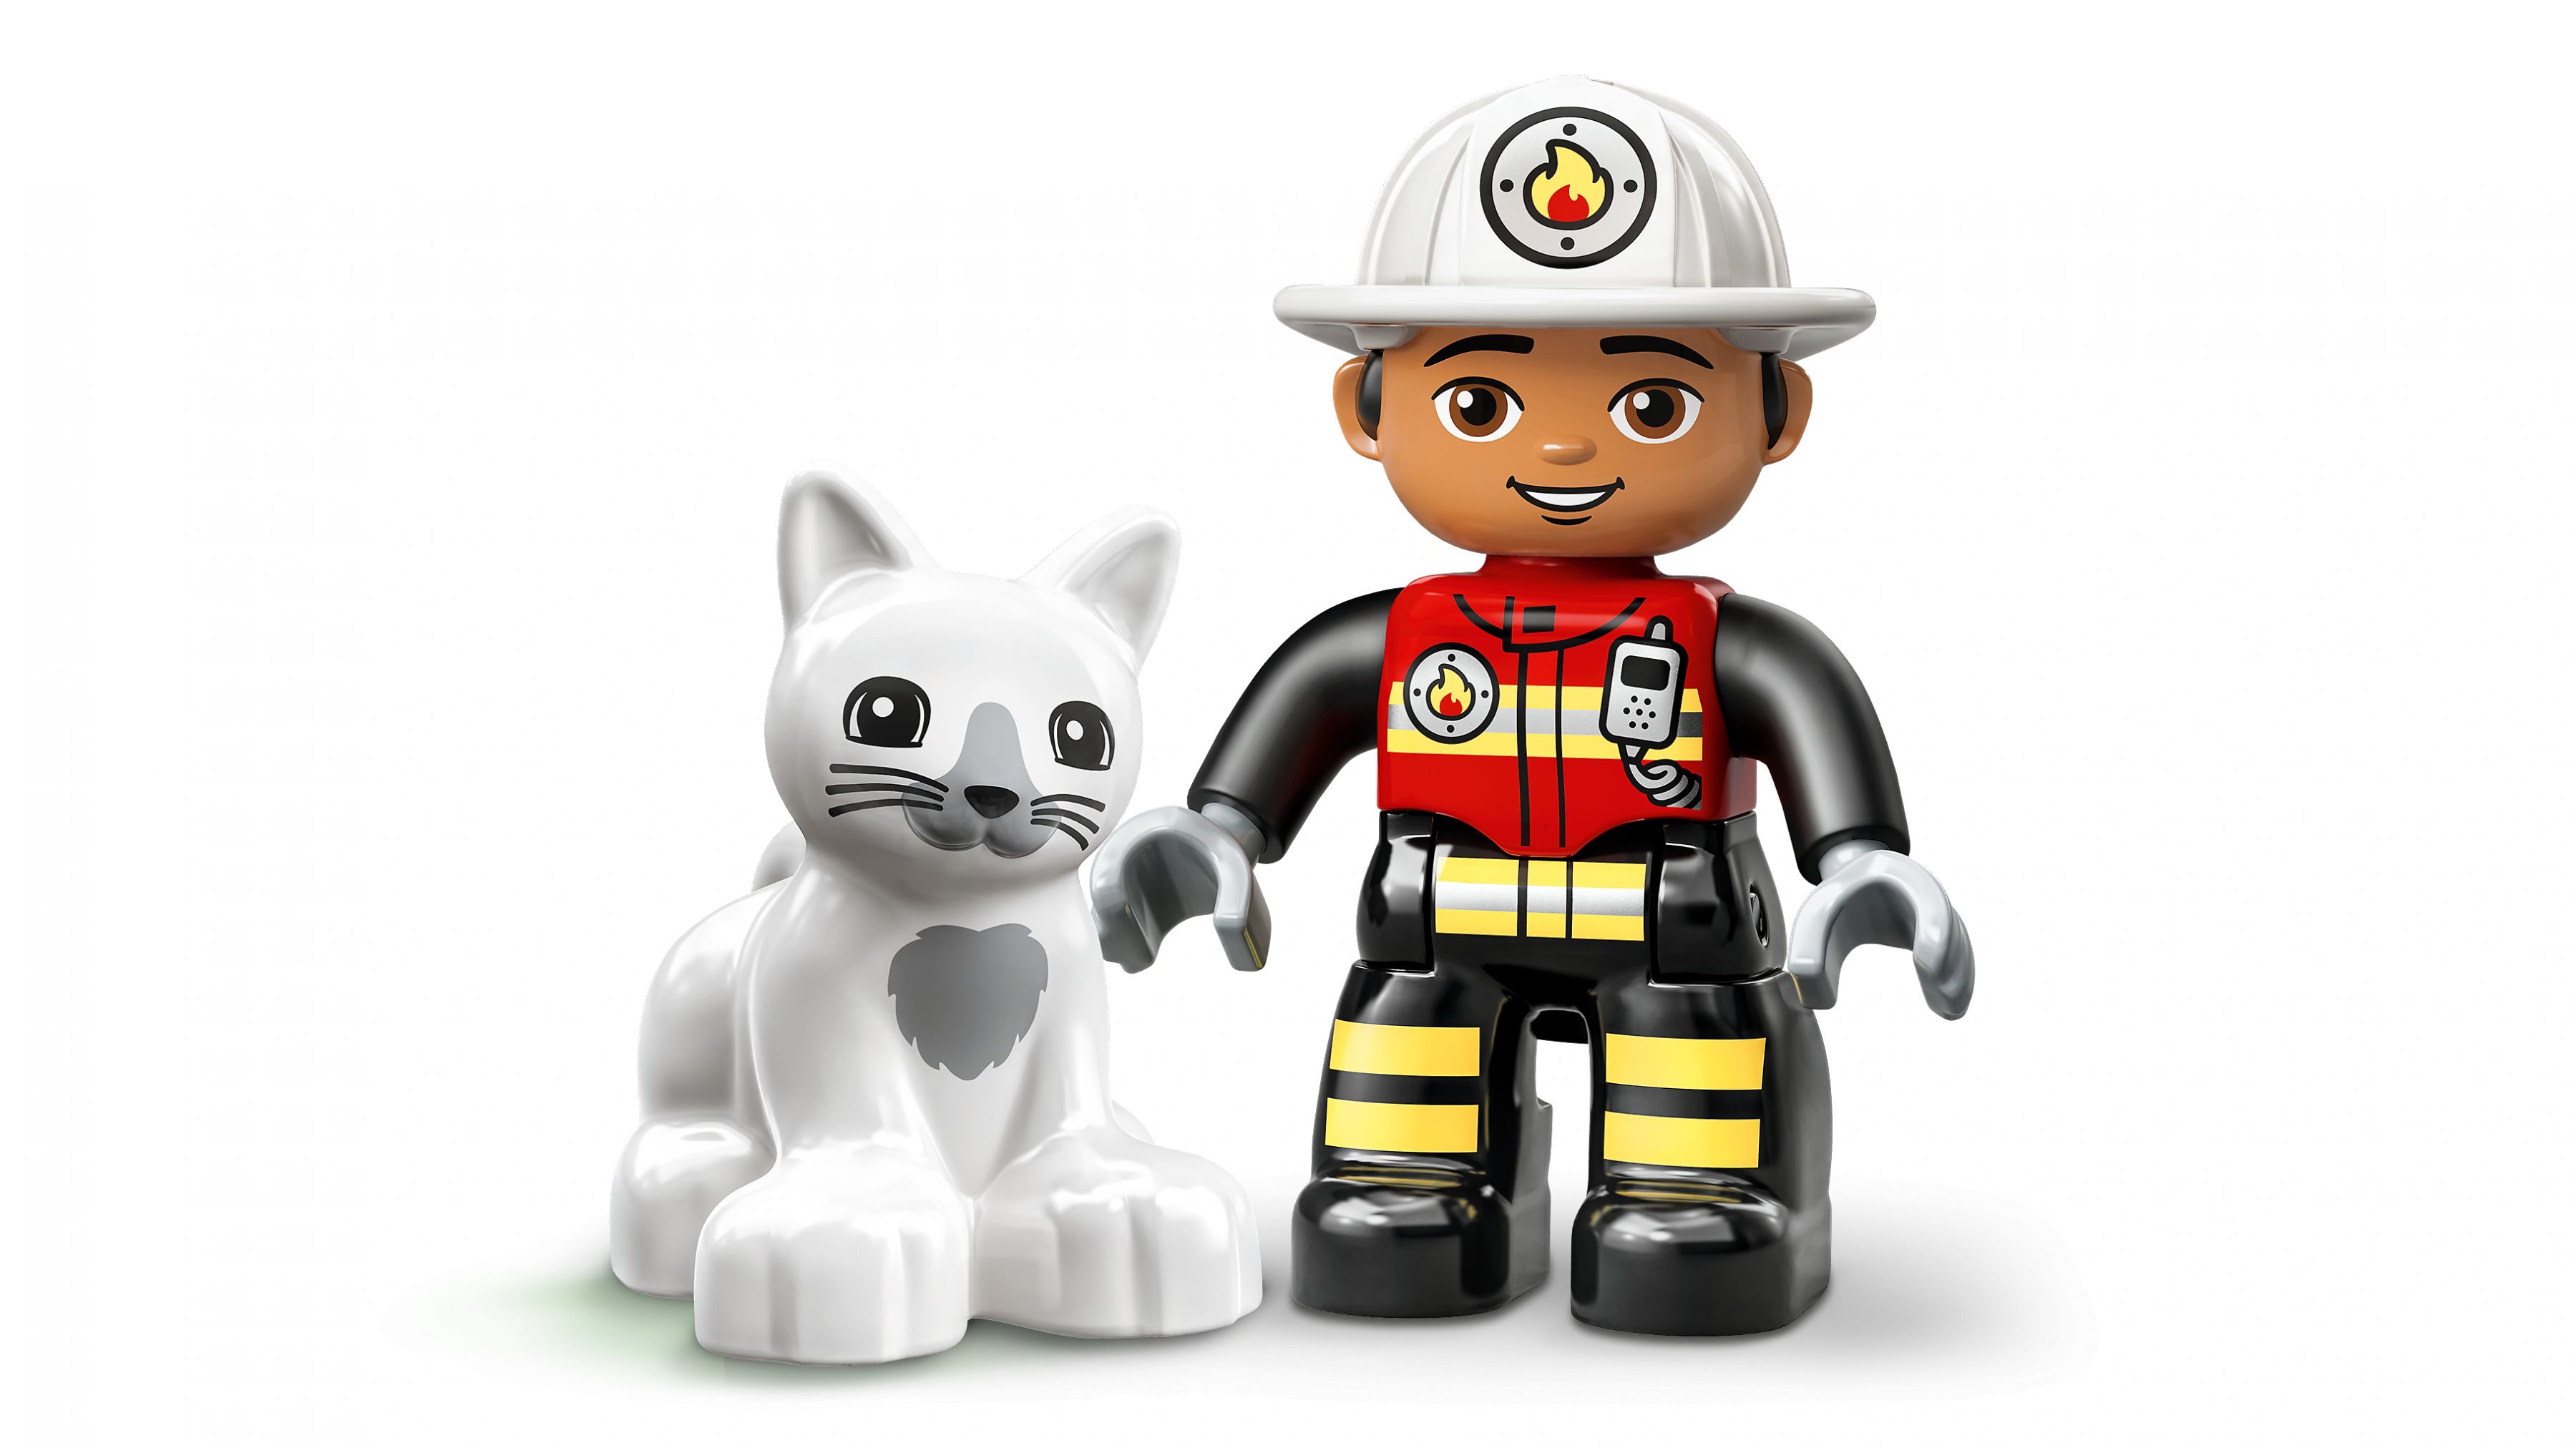 LEGO Duplo 10969 Feuerwehrauto LEGO_10969_WEB_SEC03_NOBG.jpg